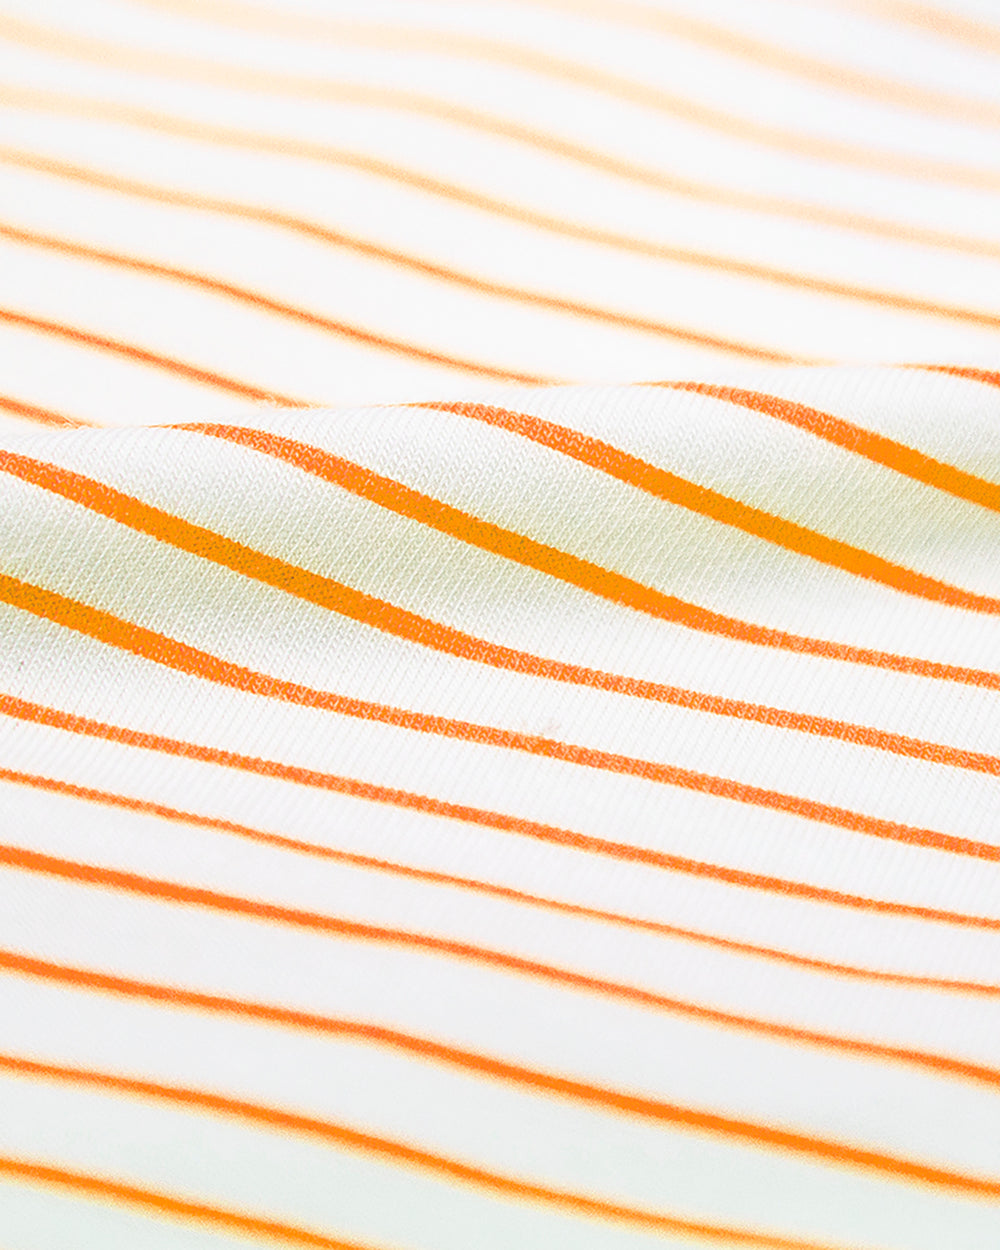 The Original Brief - Orange Candy Stripe Stripe & Stare